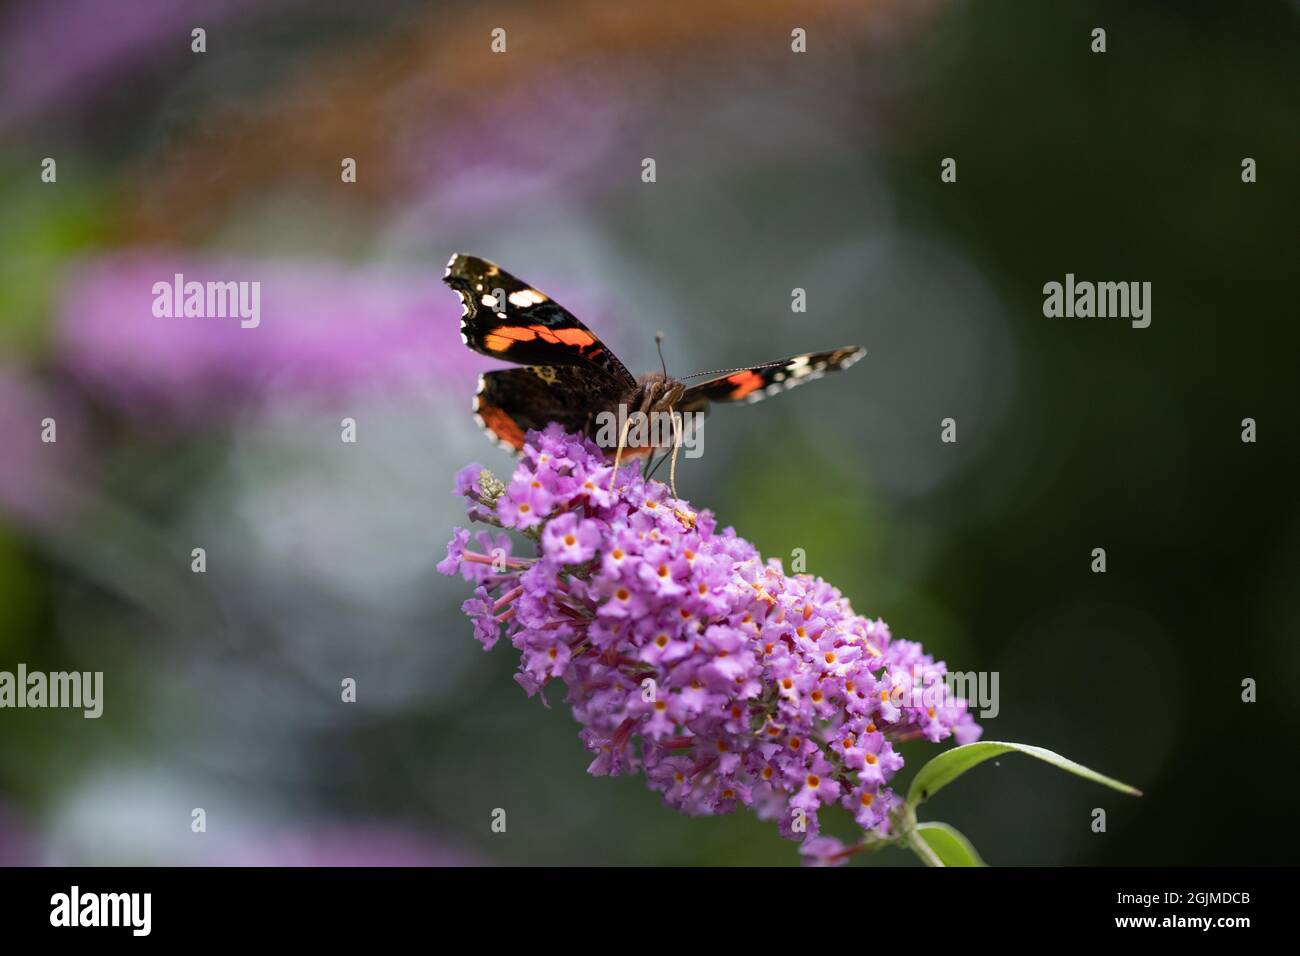 Schmetterling des roten Admirals (Vanessa atalanta). Fütterung, Aufschwungung, Nektar, über ausgedehnte, entrollte Proboscis, die in einen einzigen Buddleia-Fllower eingeführt werden. Stockfoto